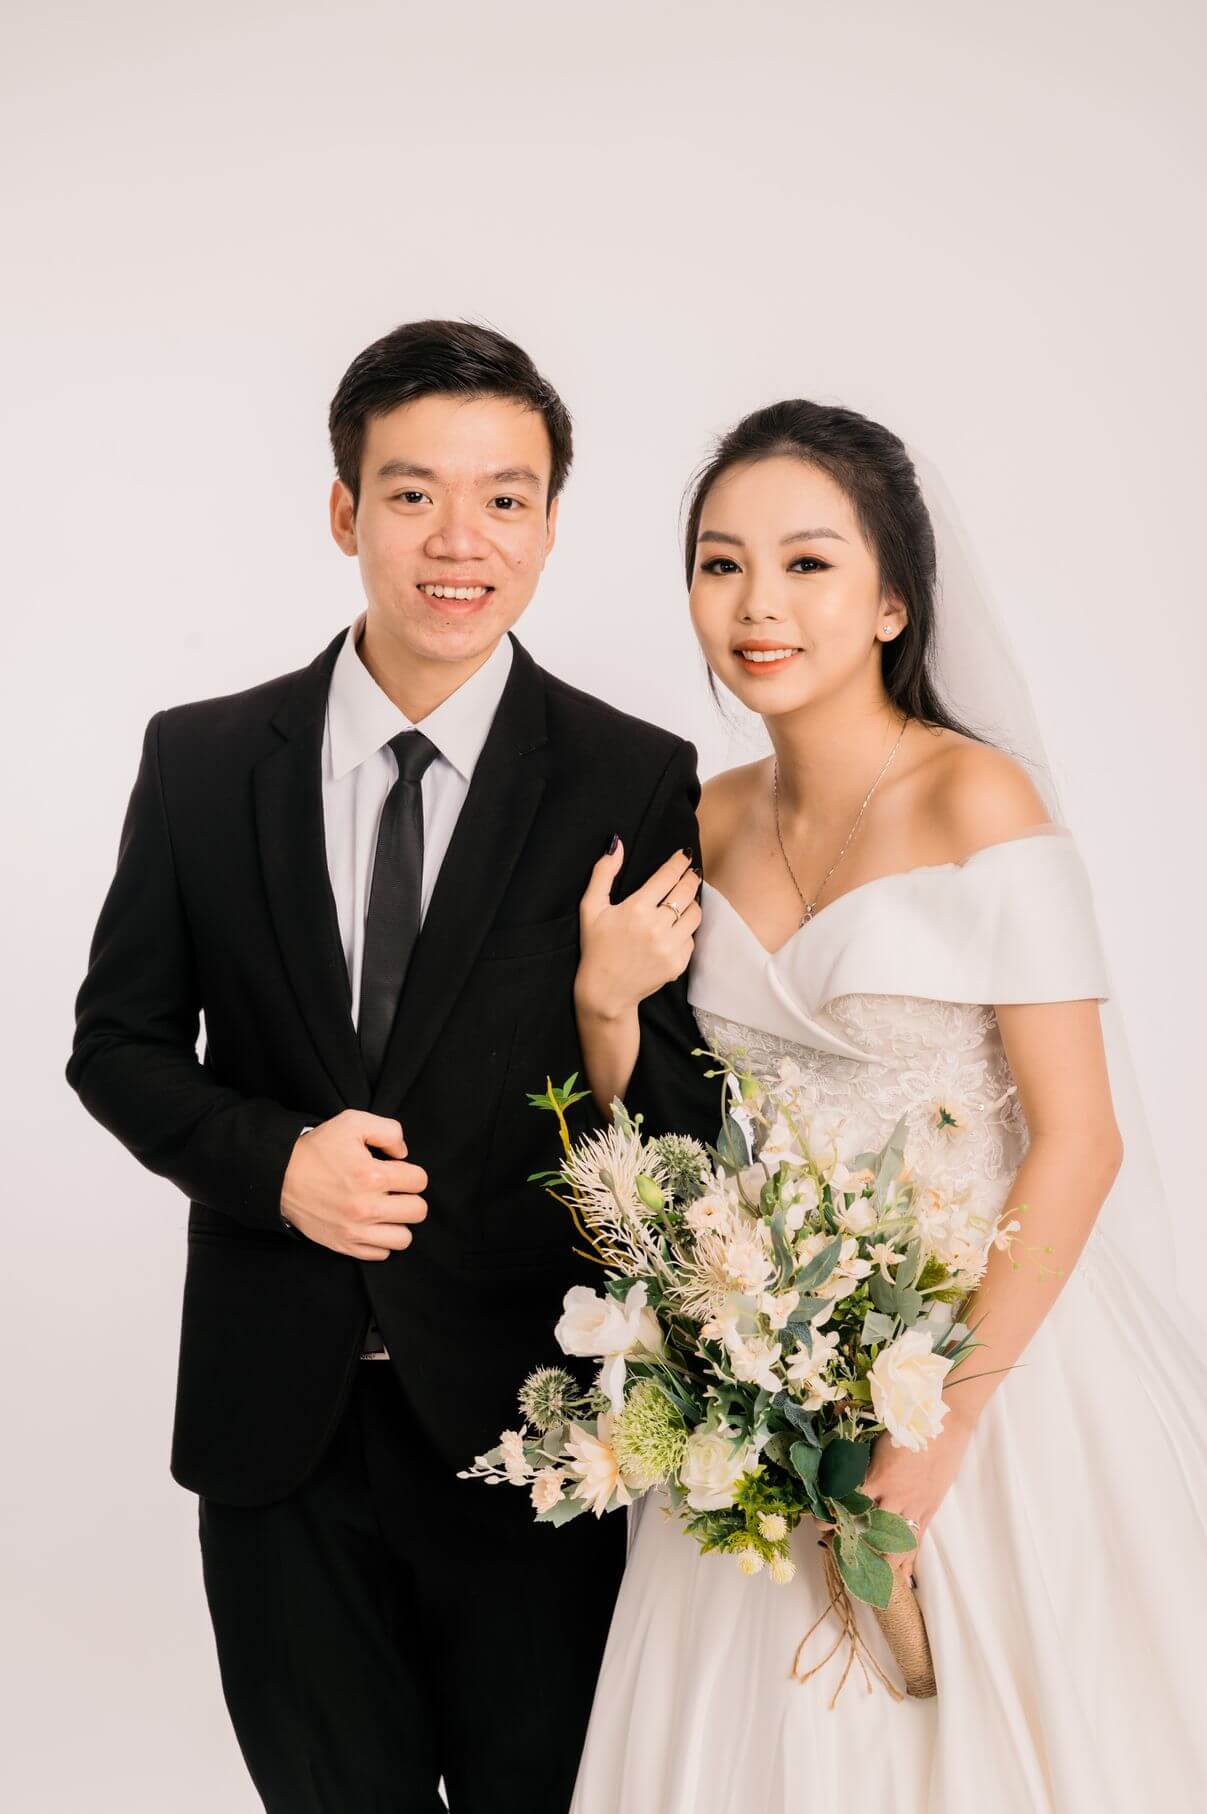 Kinh nghiệm giúp chọn hình để cổng cưới đẹp  Dianthus Wedding Decor based  in Saigon Vietnam